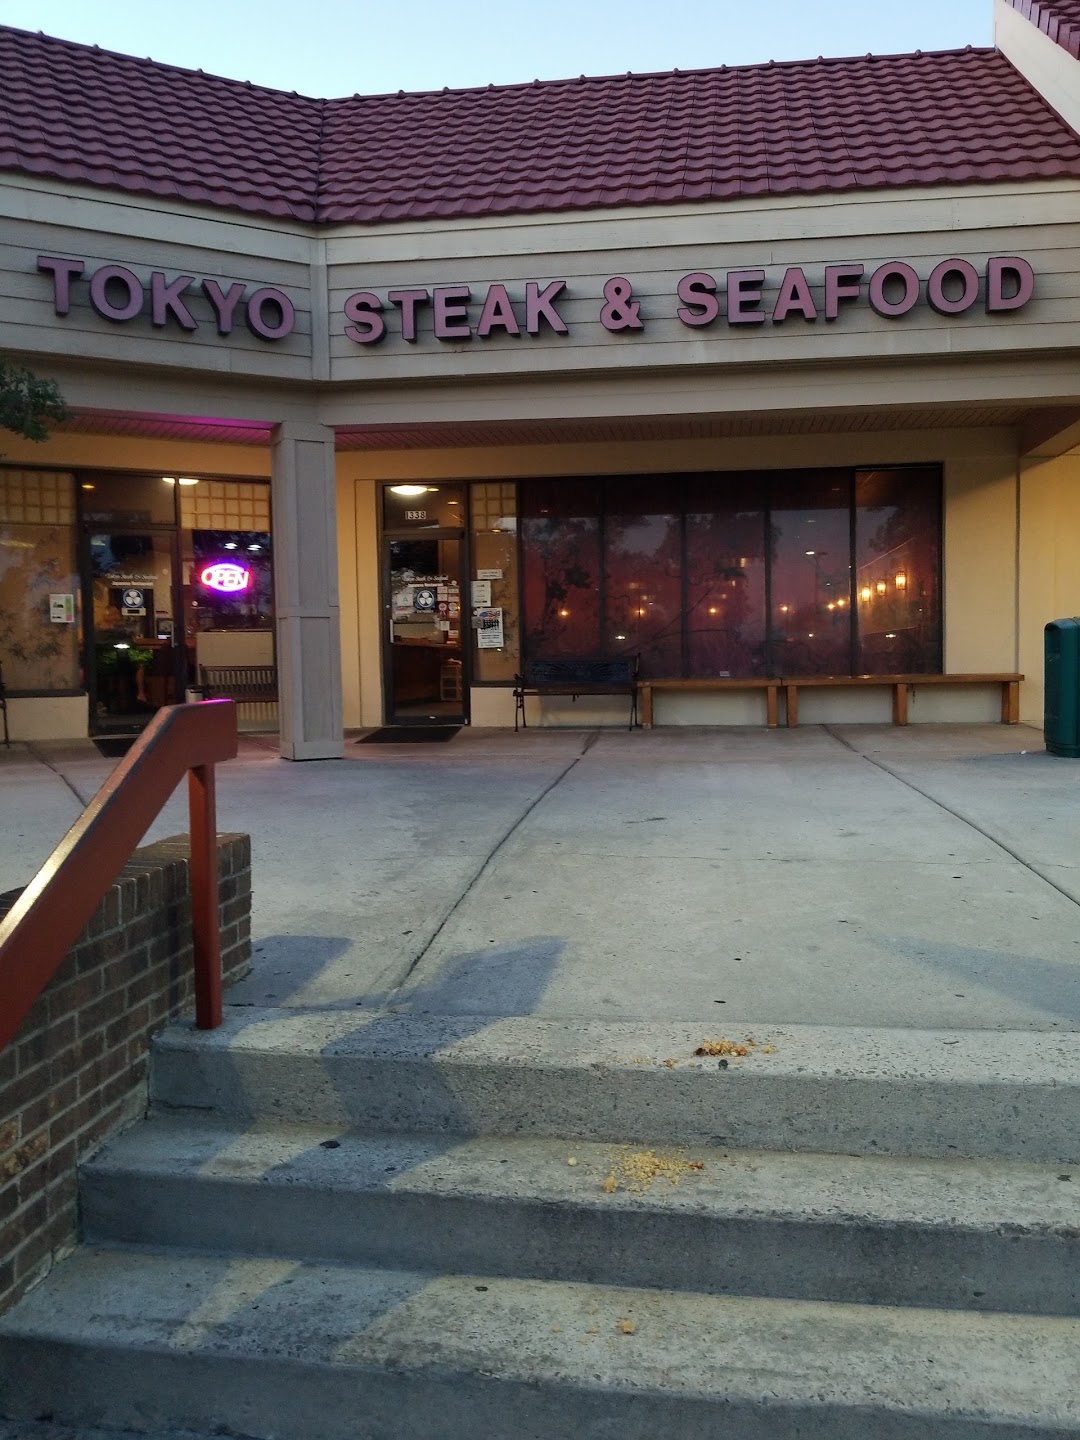 Tokyo Steak & Seafood Restaurant